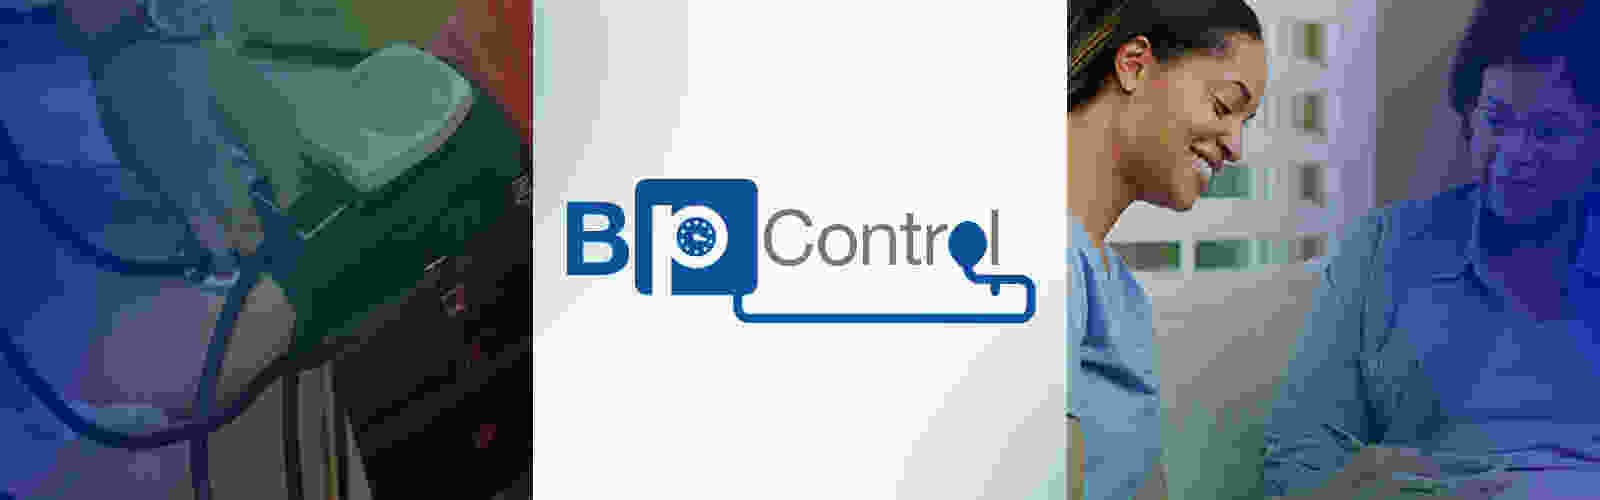 0007-PRC-Homepage-Slider-BP-Control.jpg